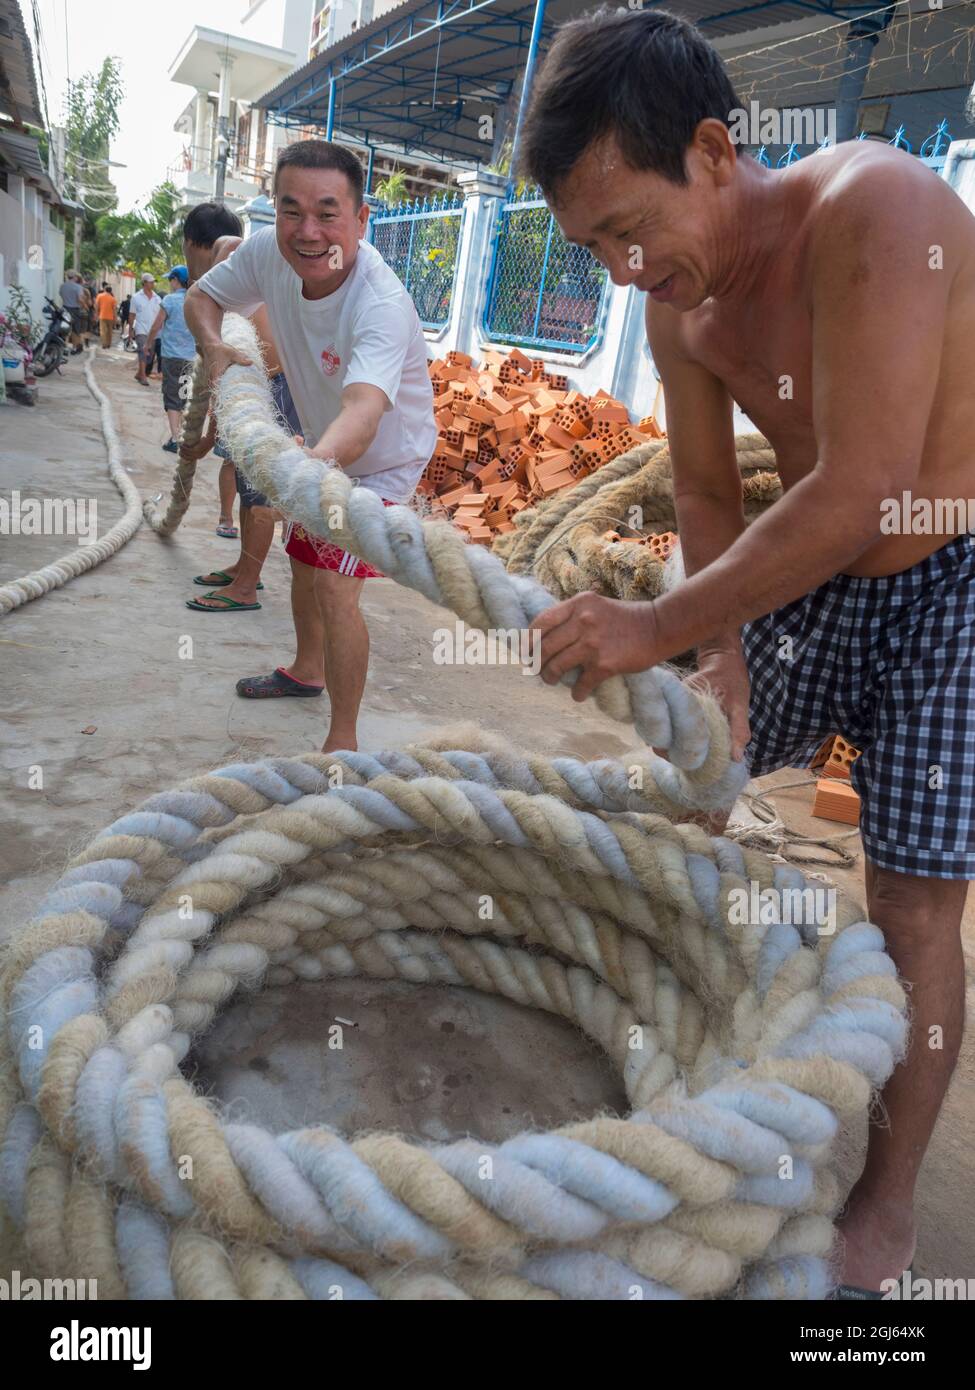 Asien, Vietnam, Mui Ne. Männer, die ein großes Seil umwickeln. (Nur Für Redaktionelle Zwecke) Stockfoto